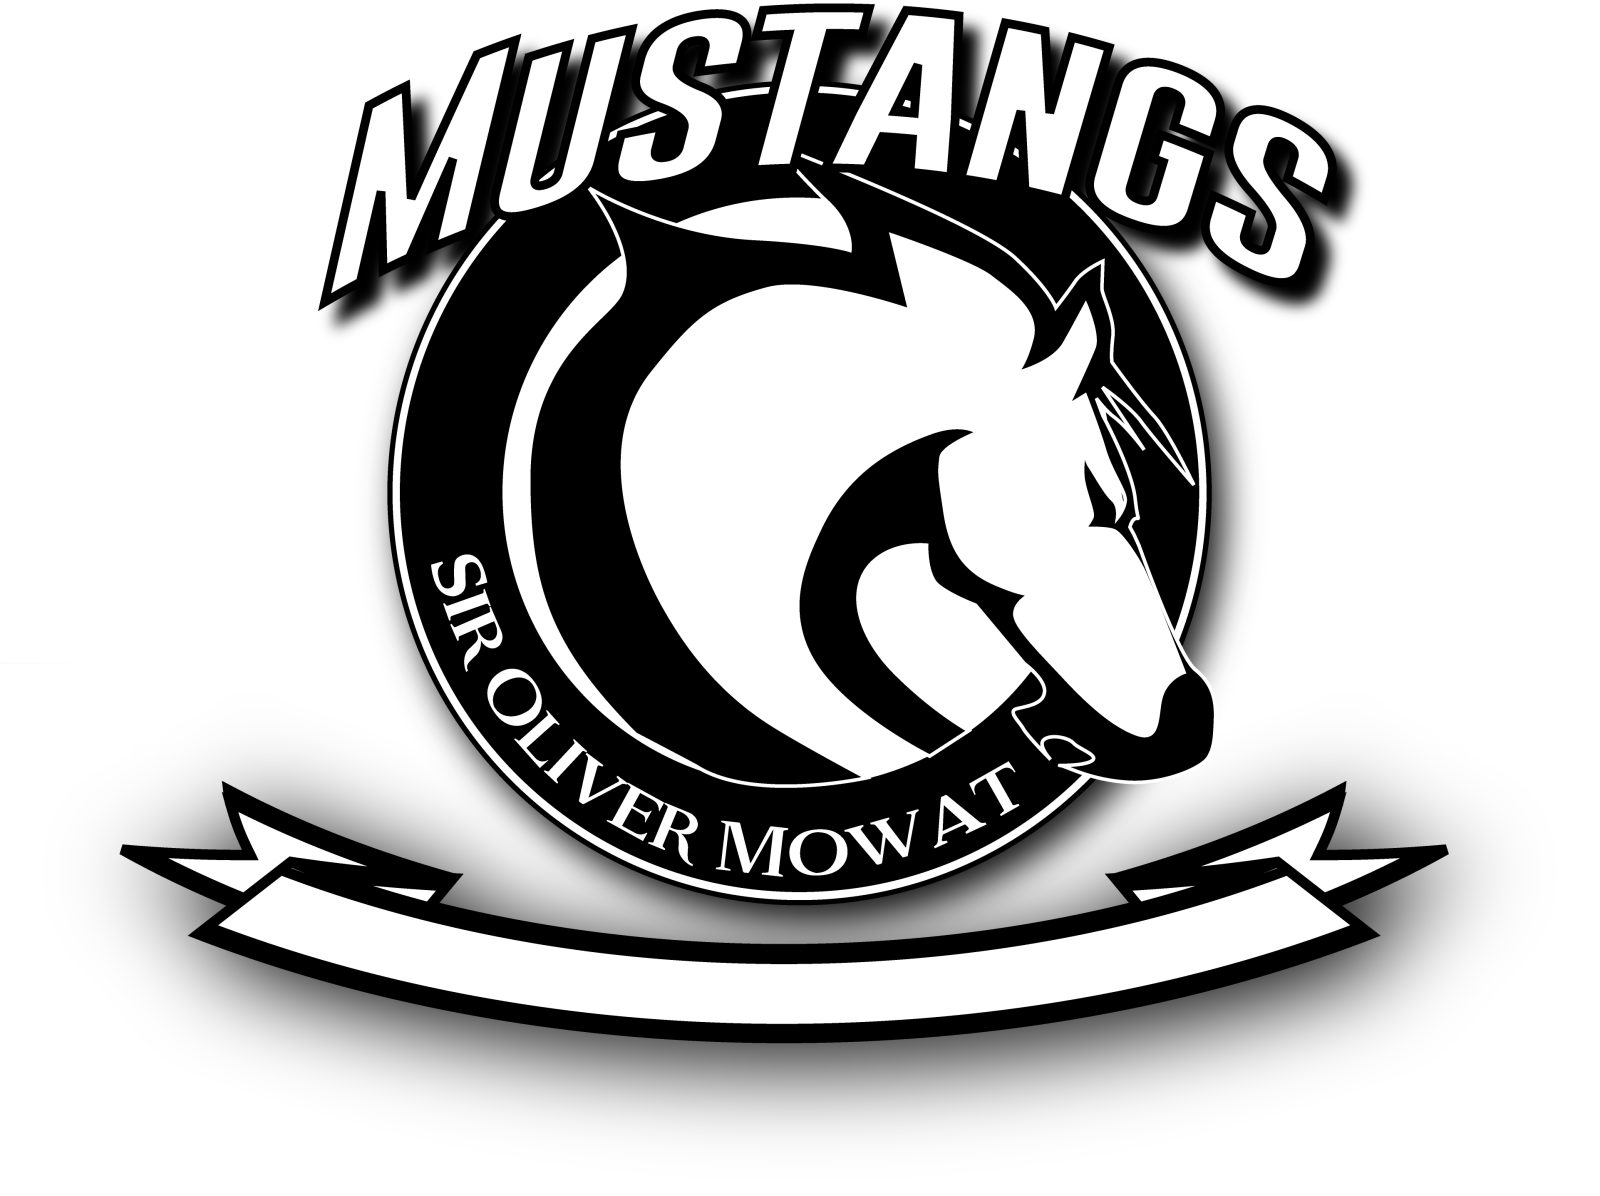 Black & white Mustang logo